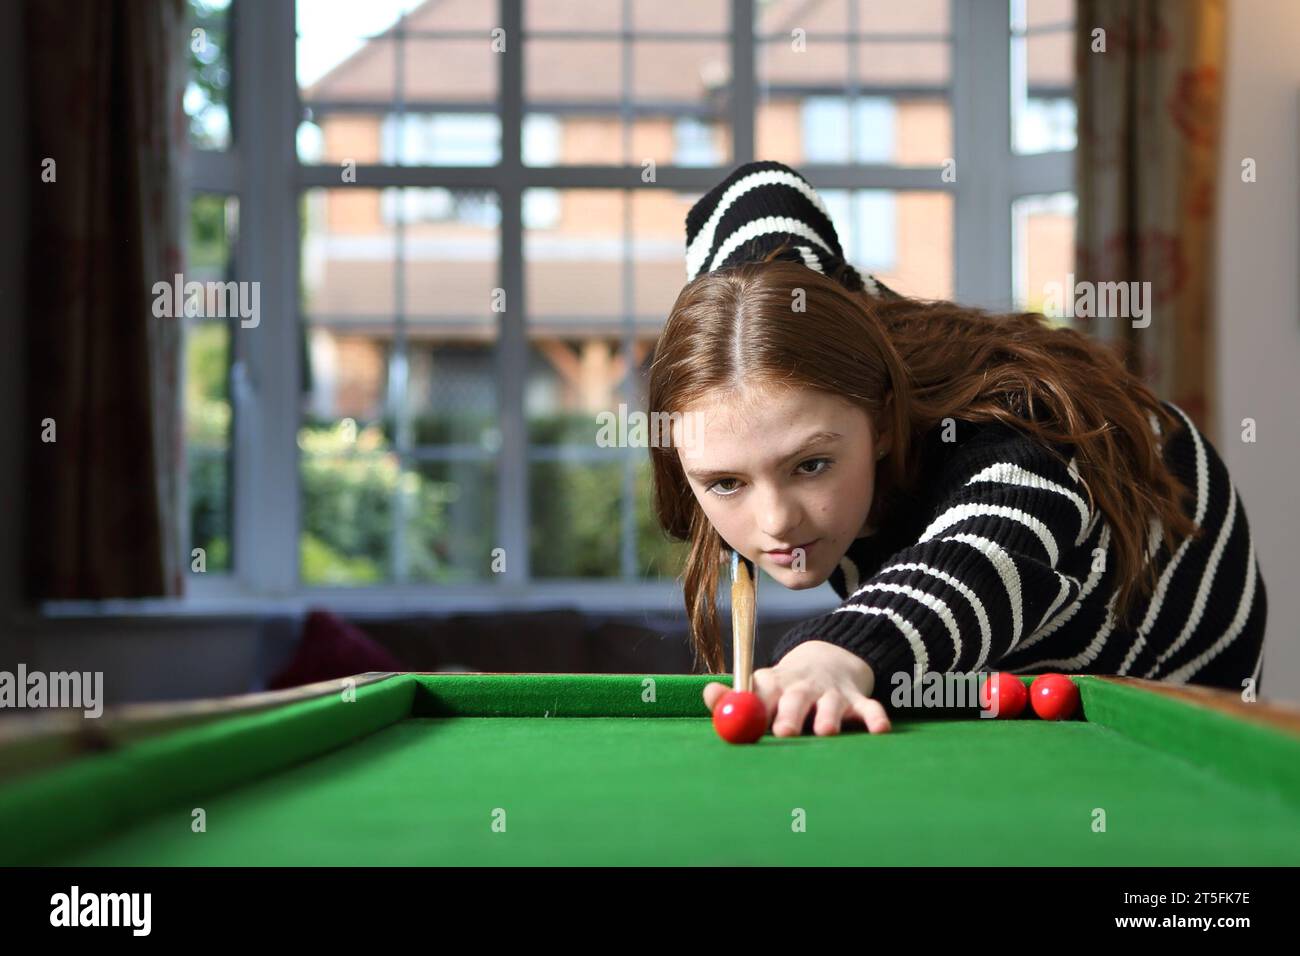 Teenager-Mädchen, das einen Schuss mit rotem Ball und Queue in einem Spiel Bagatelle anlegt Stockfoto